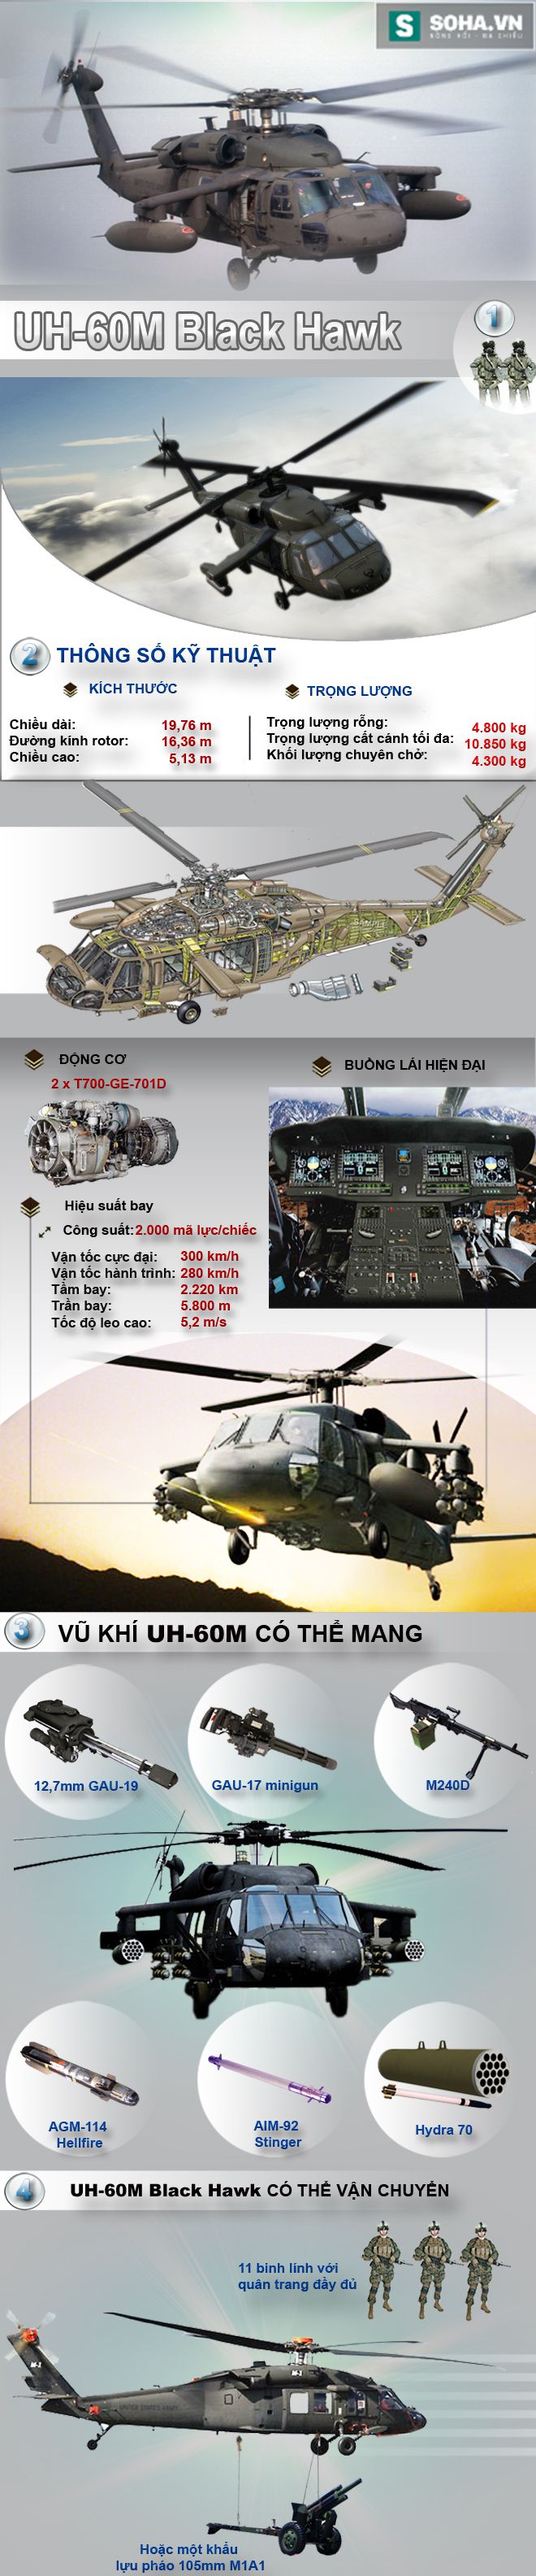 Diều hâu đen - Đối thủ chính của Mi-171 tại Việt Nam - Ảnh 1.